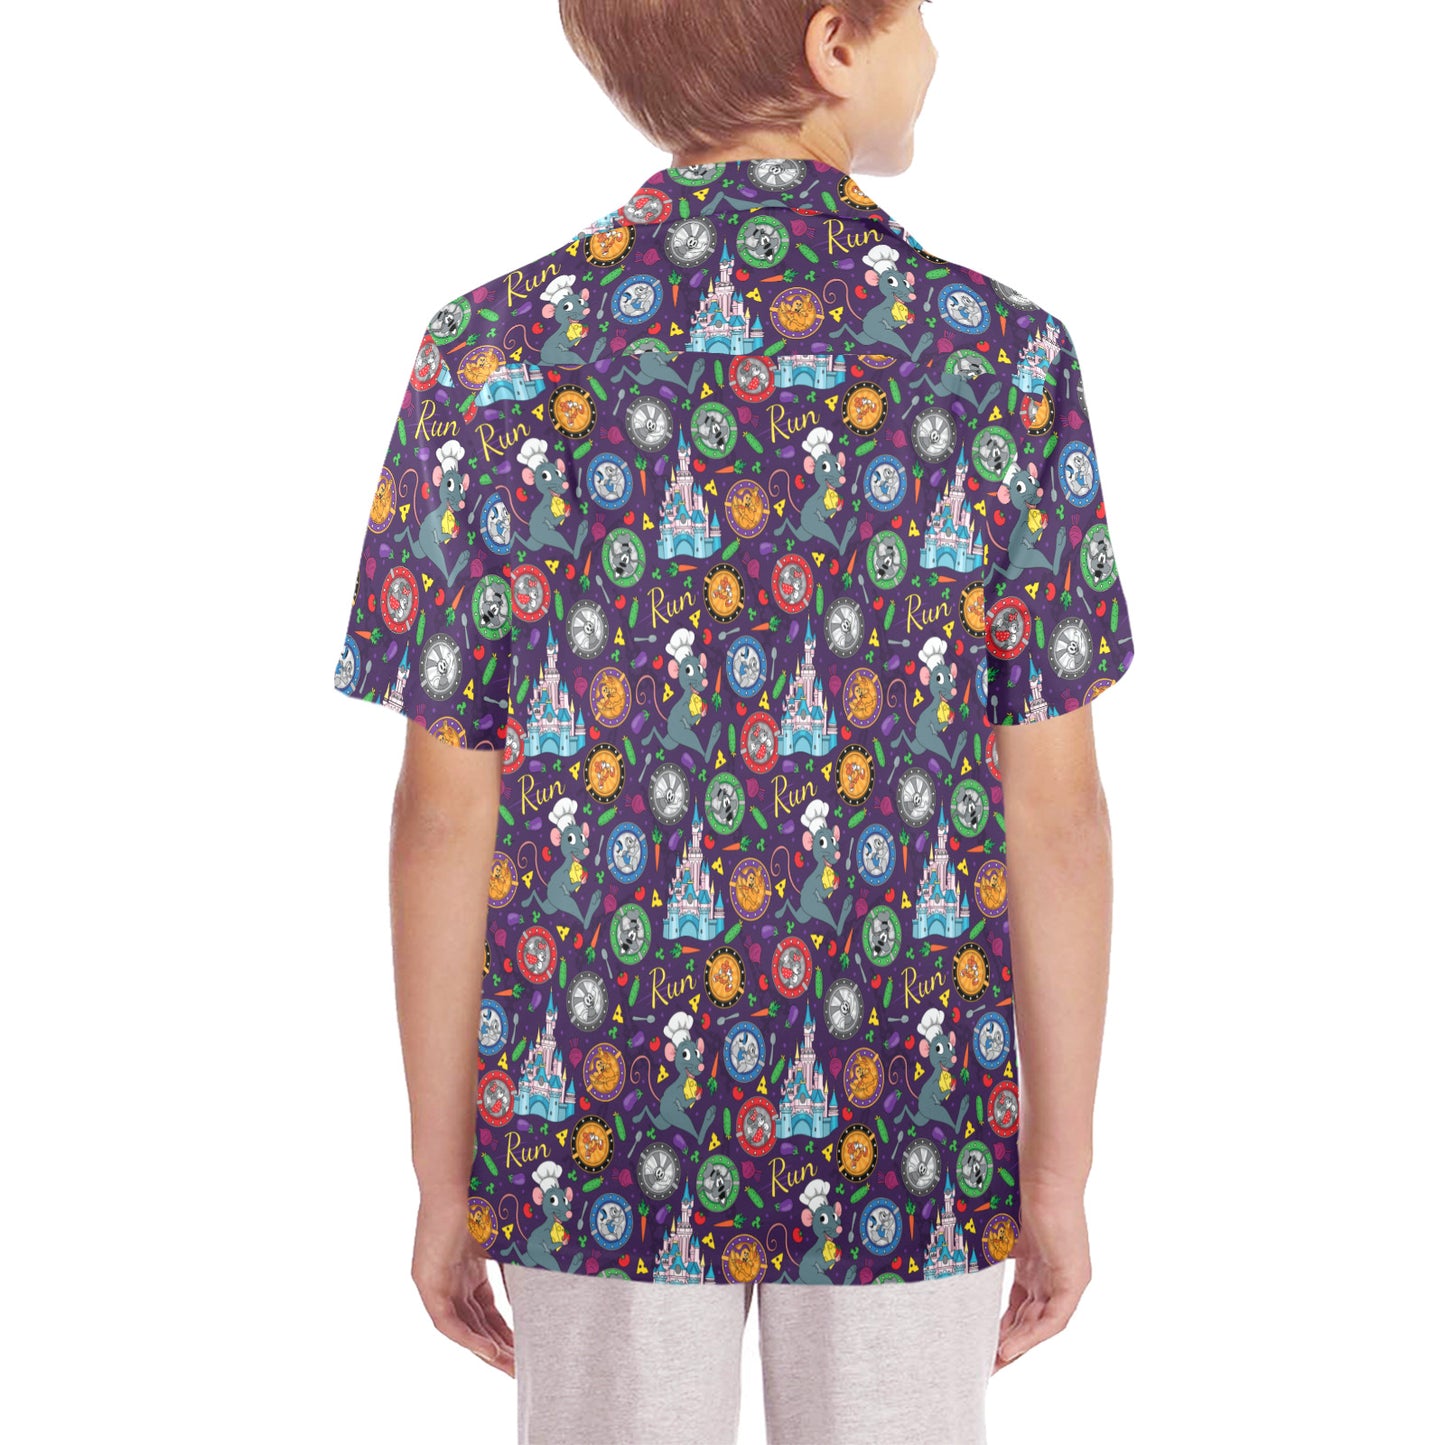 Ratatouille Wine And Dine Race Kid's Hawaiian Shirt